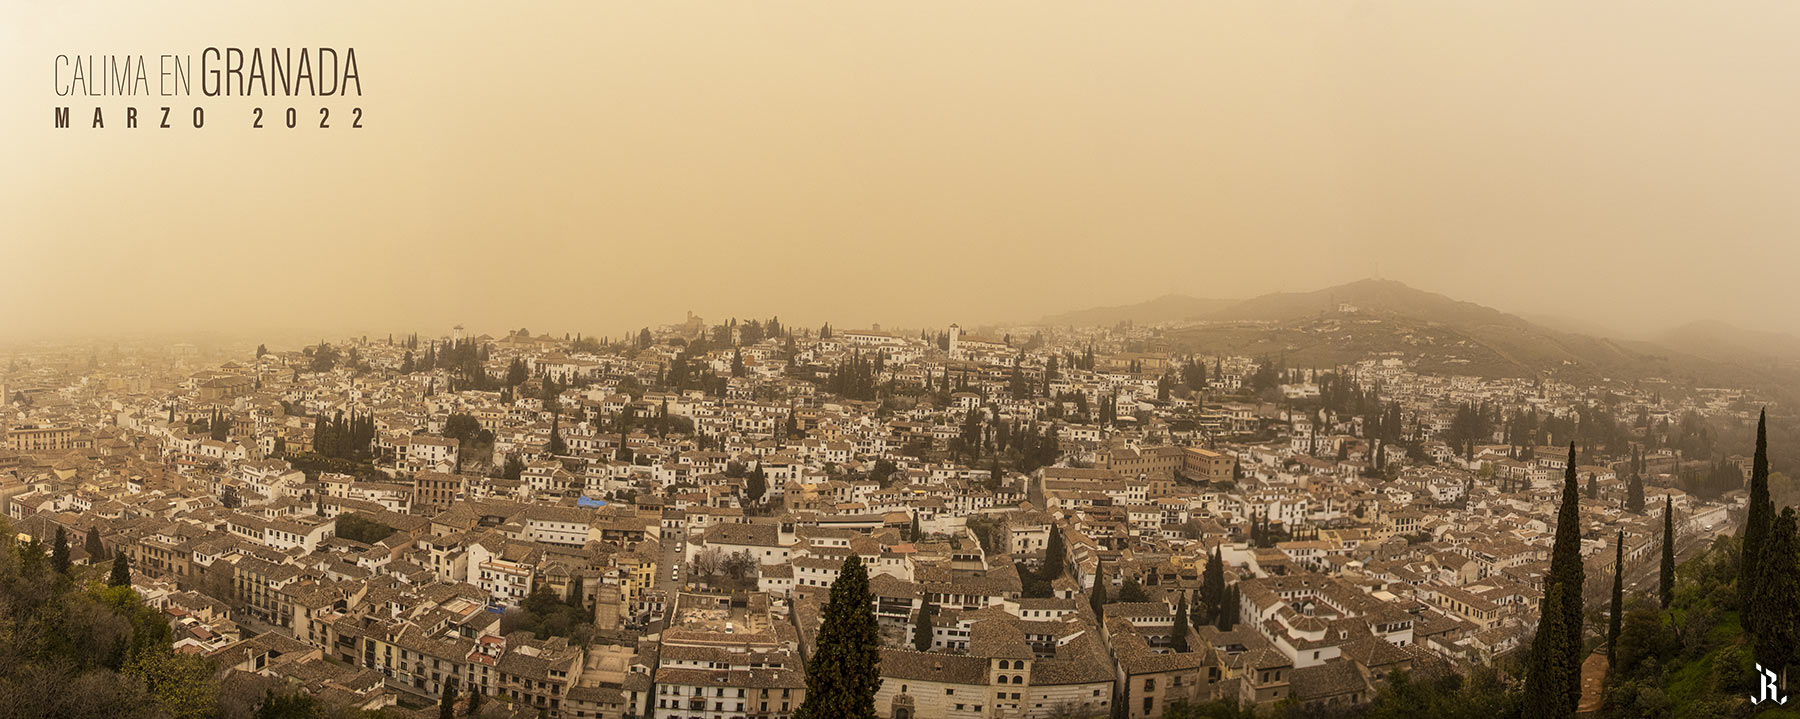 Granada con calima, año 2023